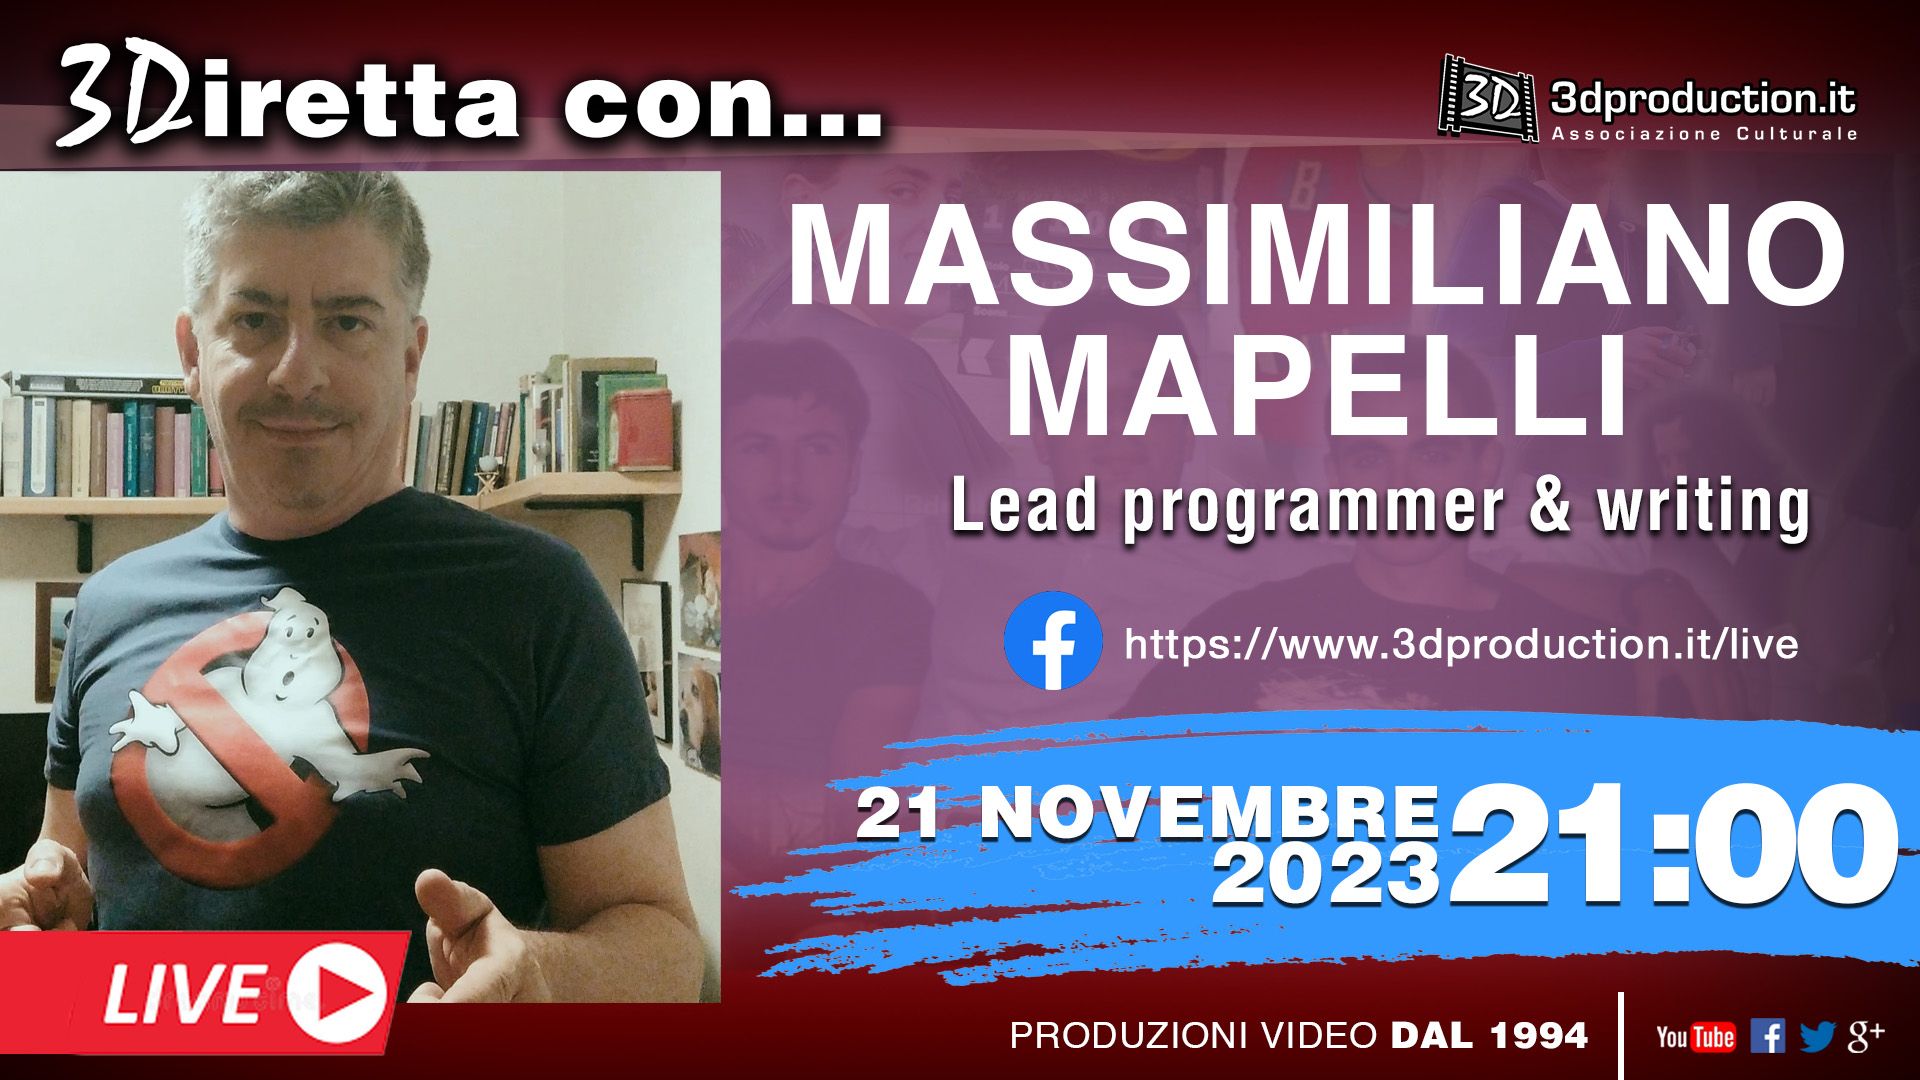 3diretta con... Massimiliano Mapelli